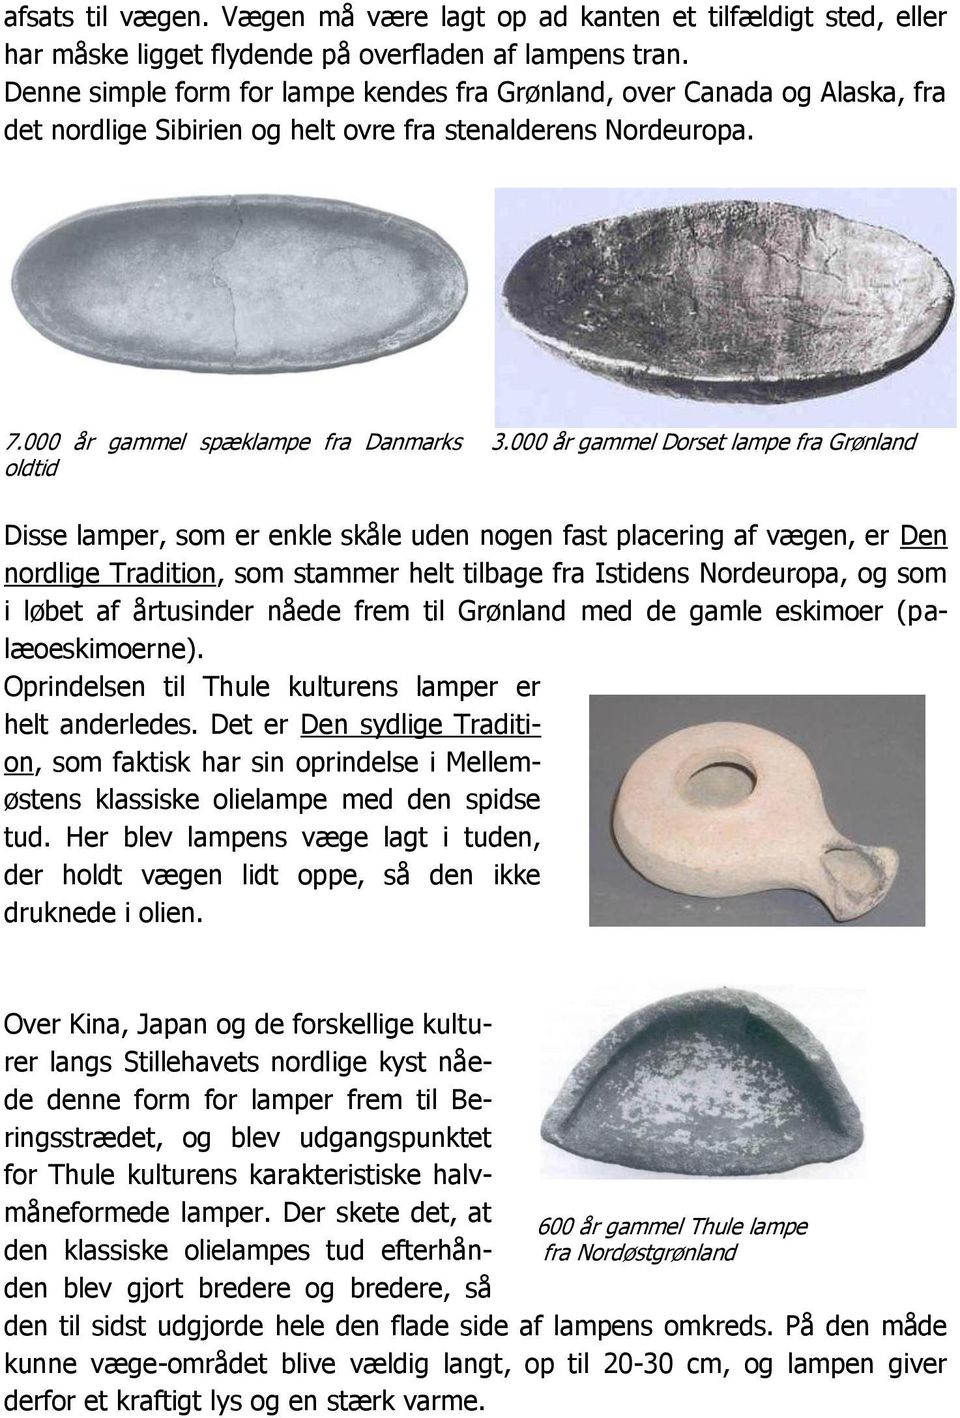 Qivi. Nyhedsbrev fra Det Grønlandske Hus i Aarhus - PDF Free Download